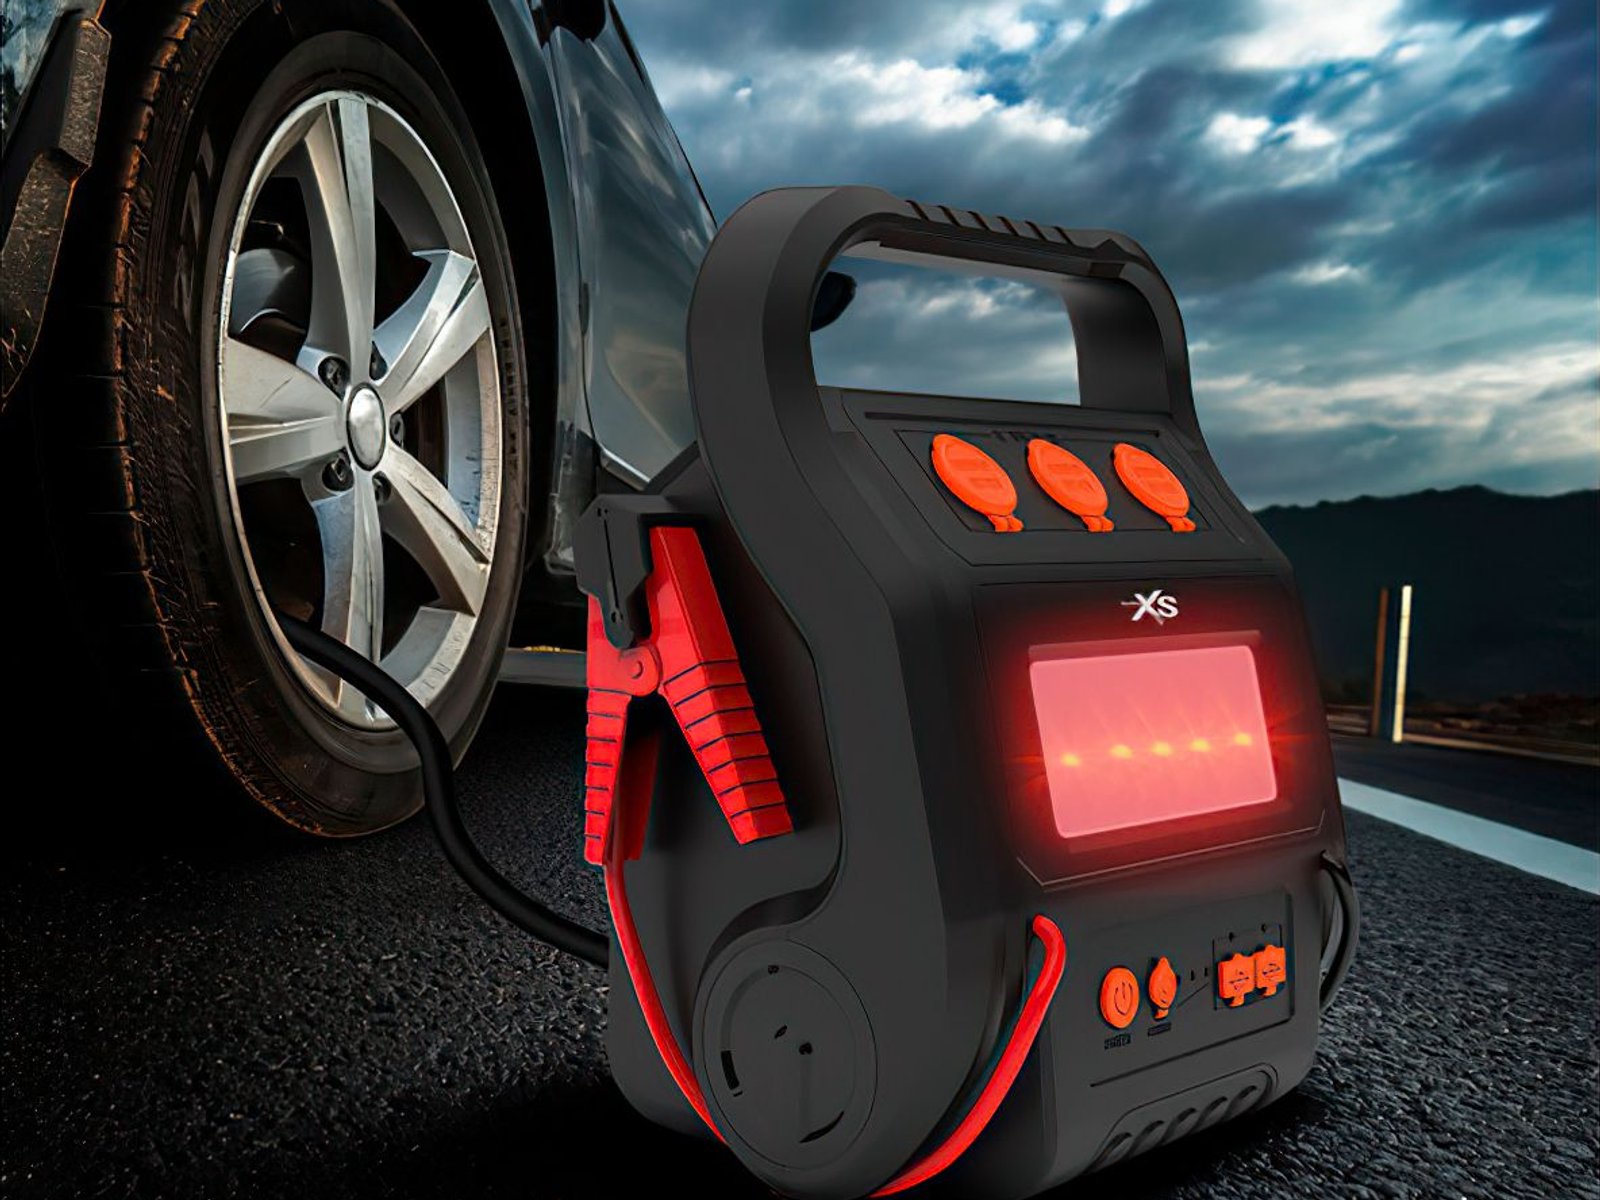 Aldi verkauft geniales Notfall-Gadget für Autofahrer zum Sparpreis